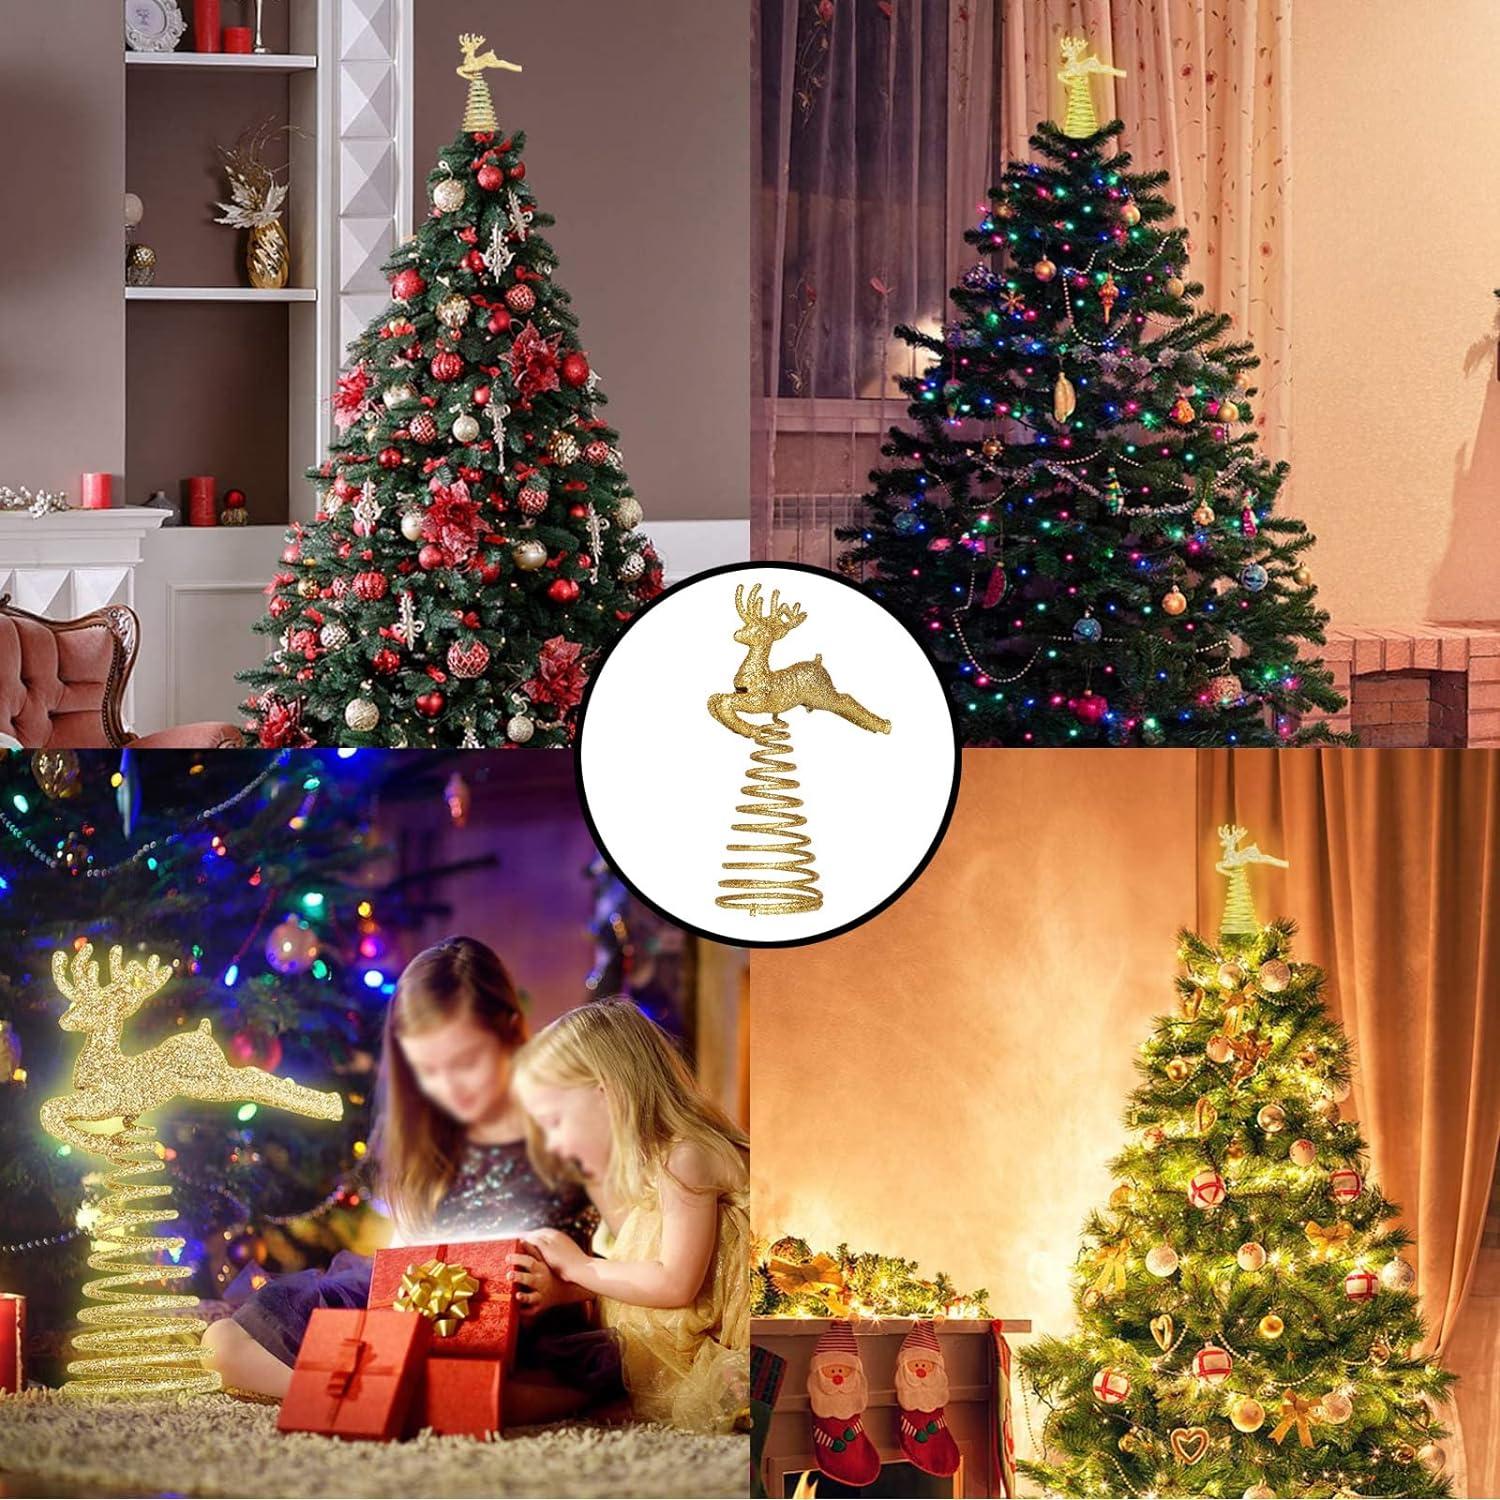 Đồ trang trí cây thông Noel Thắp sáng Đồ trang trí cây thông Noel (Vàng) Đồ trang trí cây thông Noel Cây ngôi sao có thể tái sử dụng Đồ trang trí cây thông Noel Đồ trang trí cây thông Noel bằng vàng (Noel Elk)